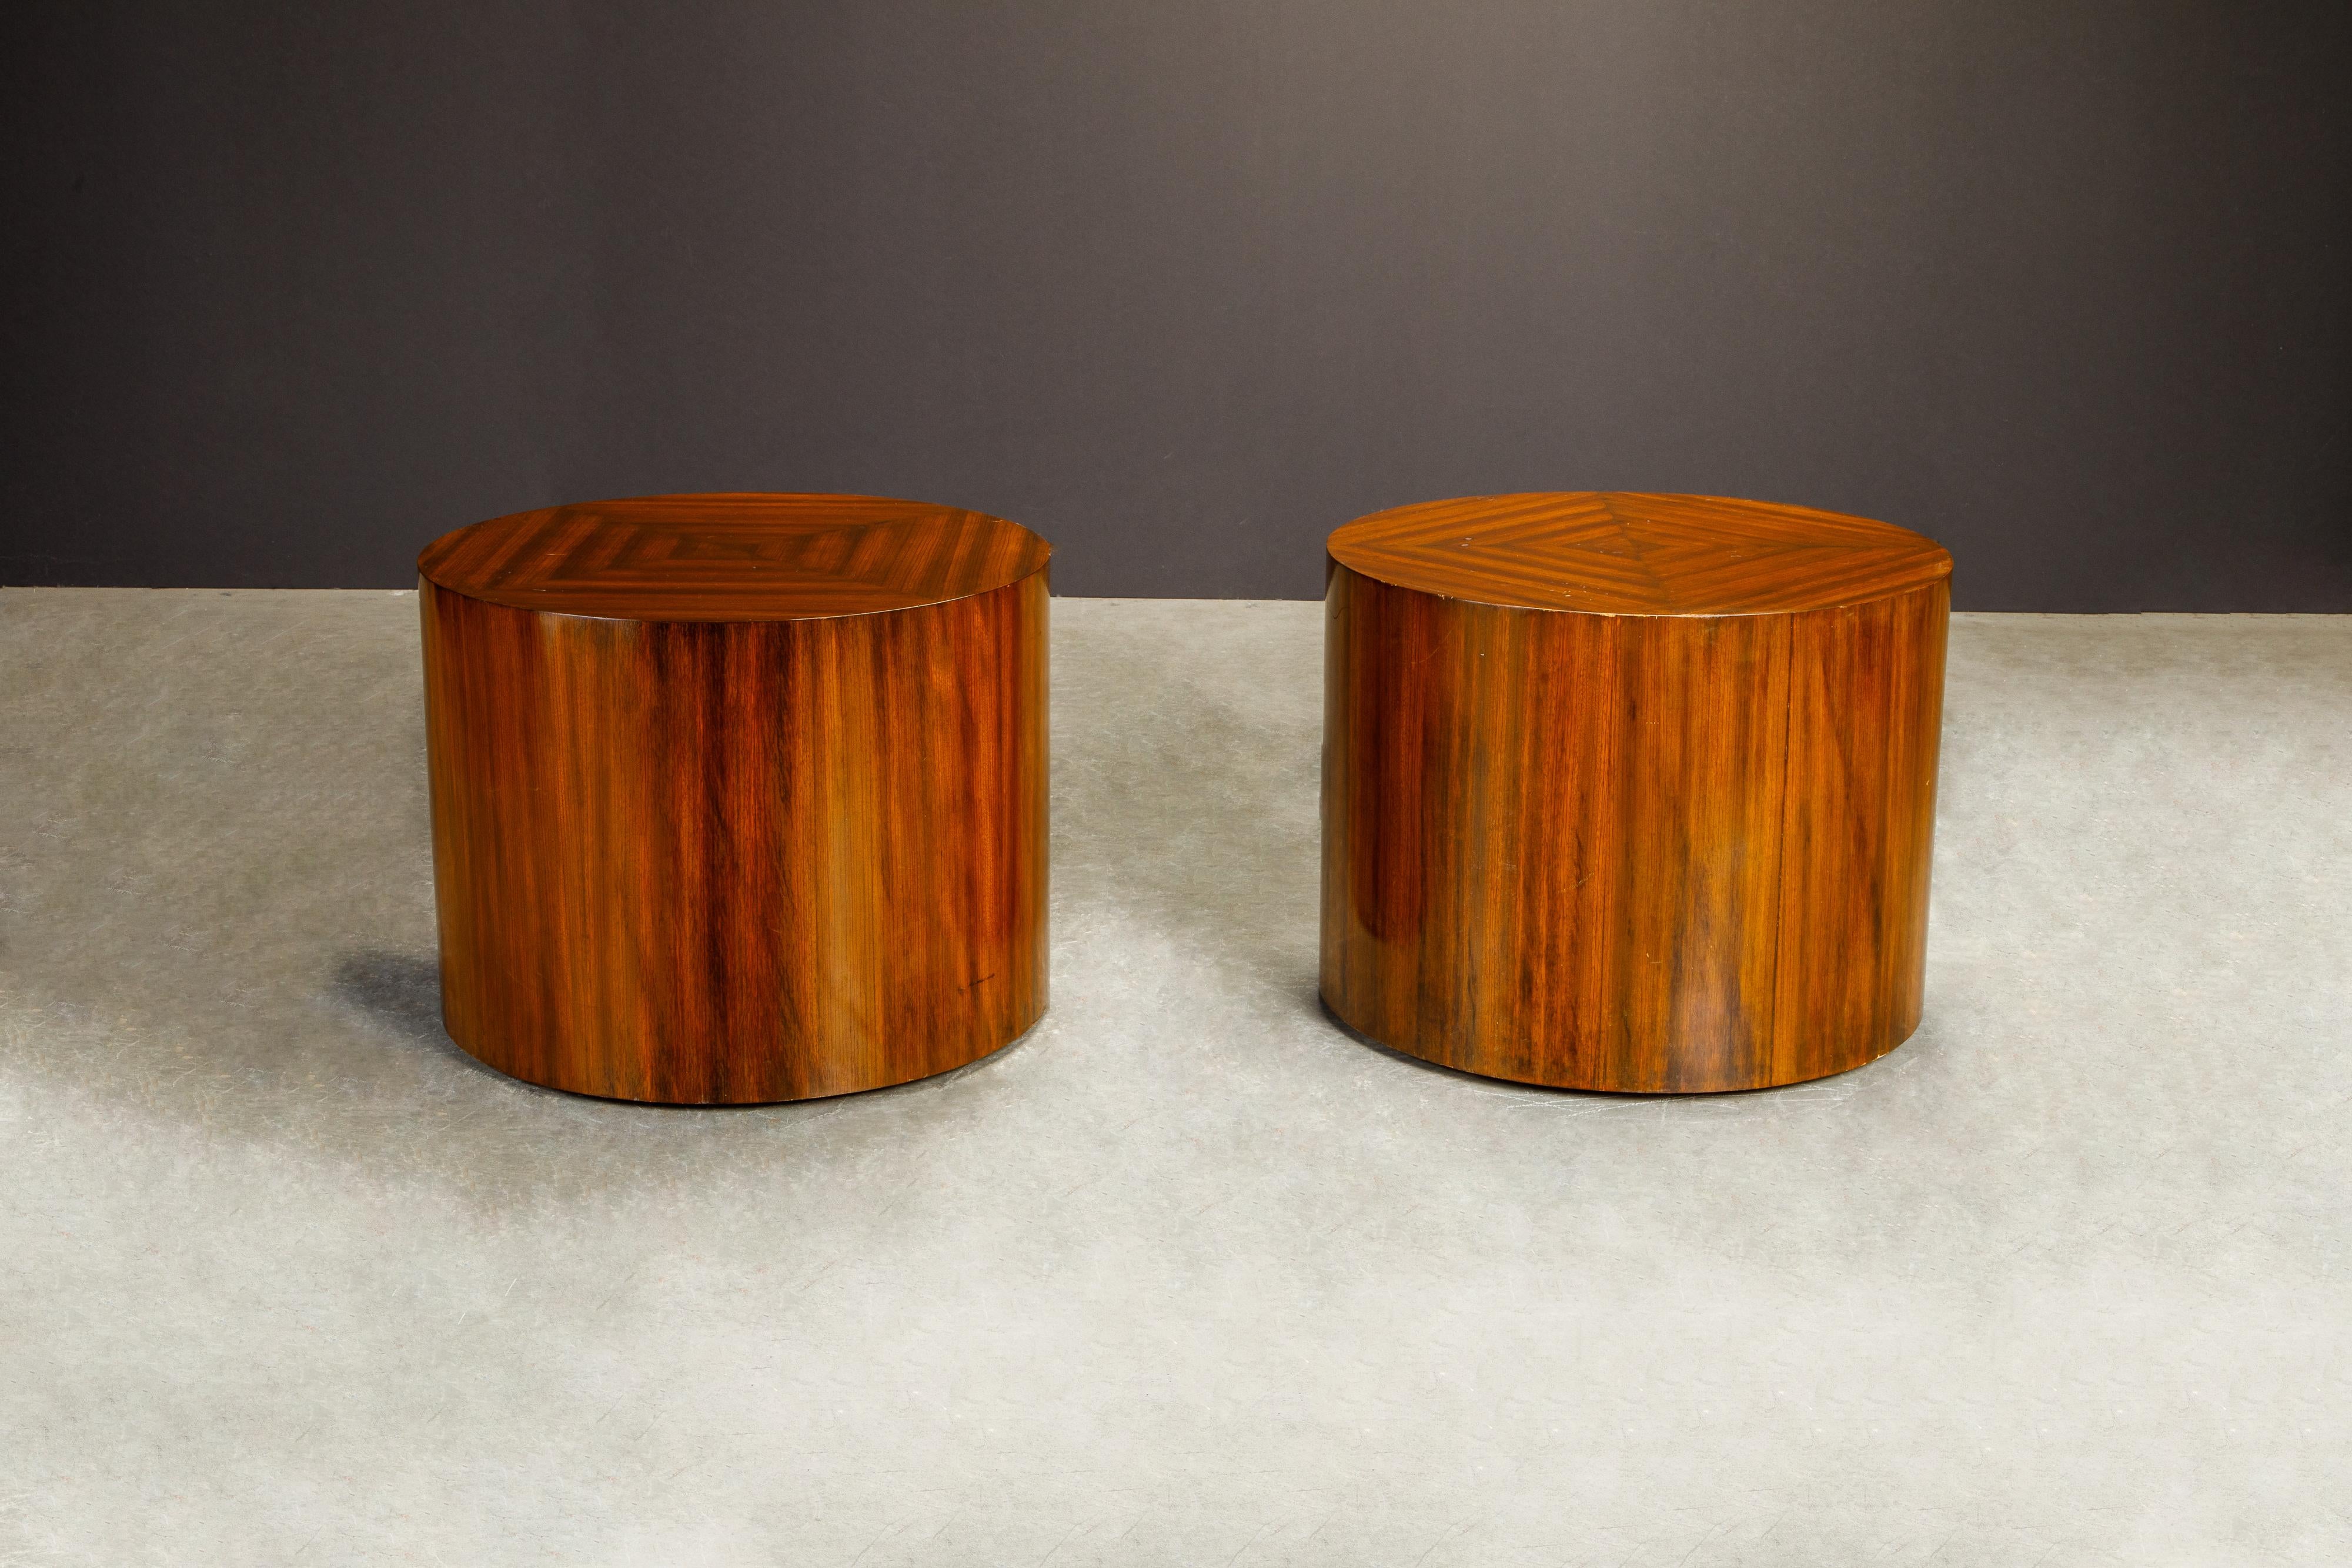 Veneer Pair of Mid-Century Modern Drum Form Wood Side Tables / Pedestals, circa 1970s